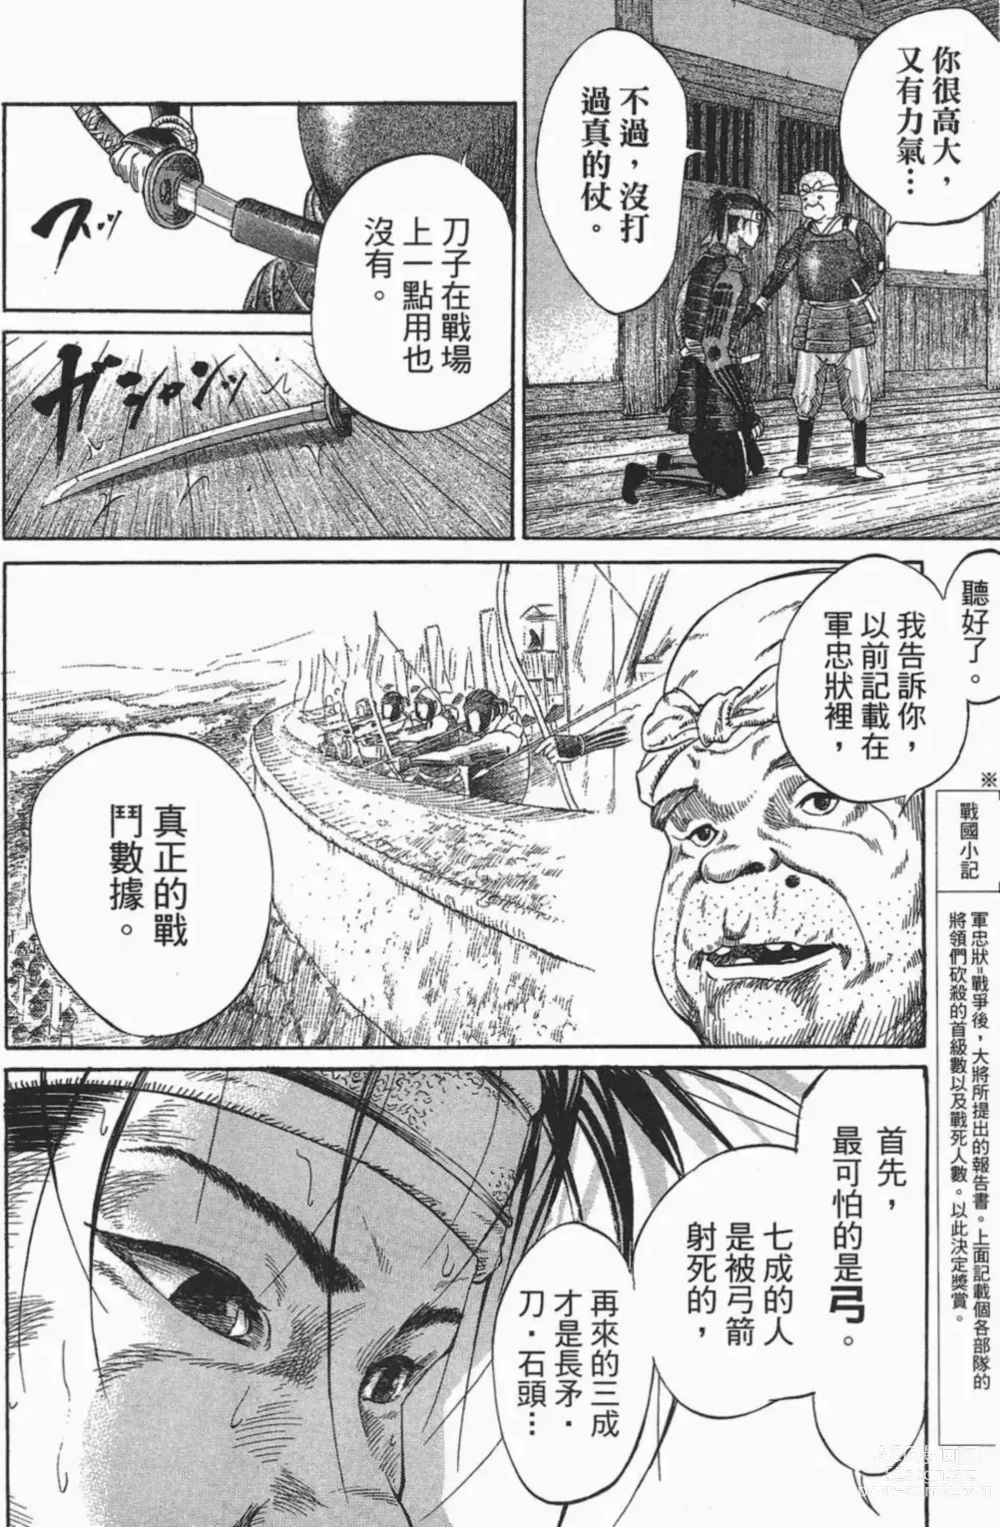 Page 18 of manga [宫下英树]战国第一卷［中文］